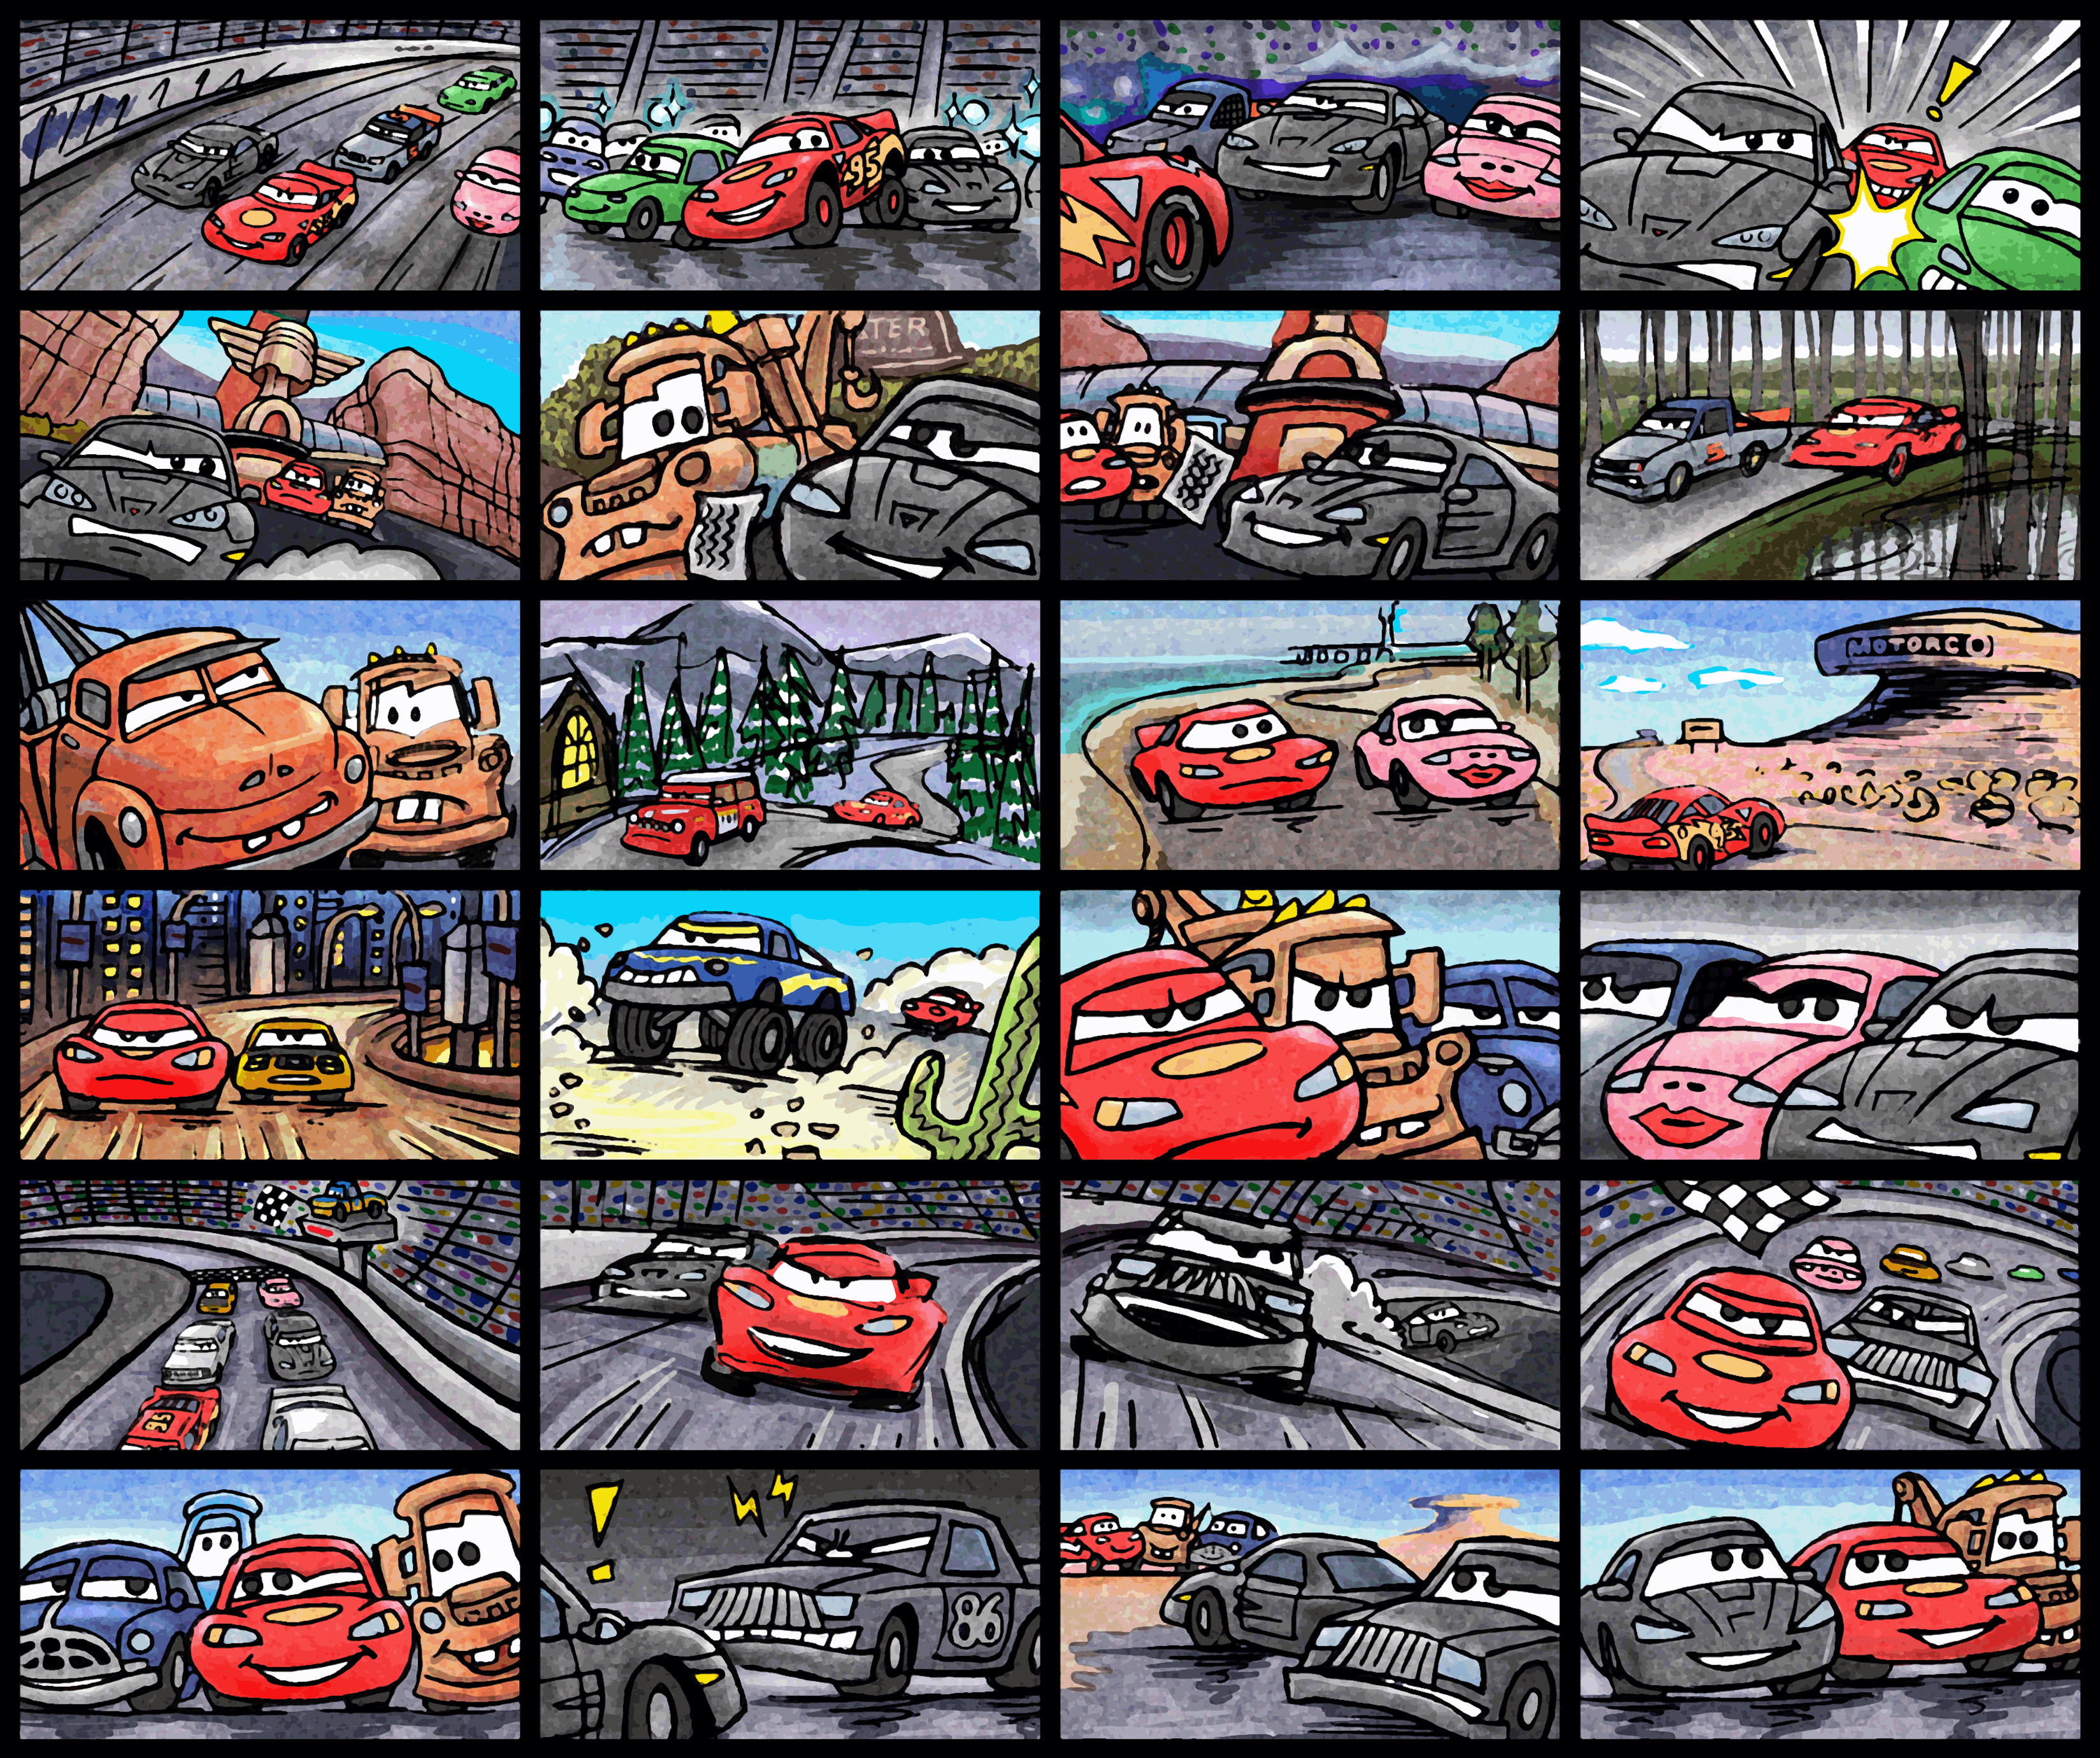 Cars Race-o-rama Nintendo Wii Video Game 